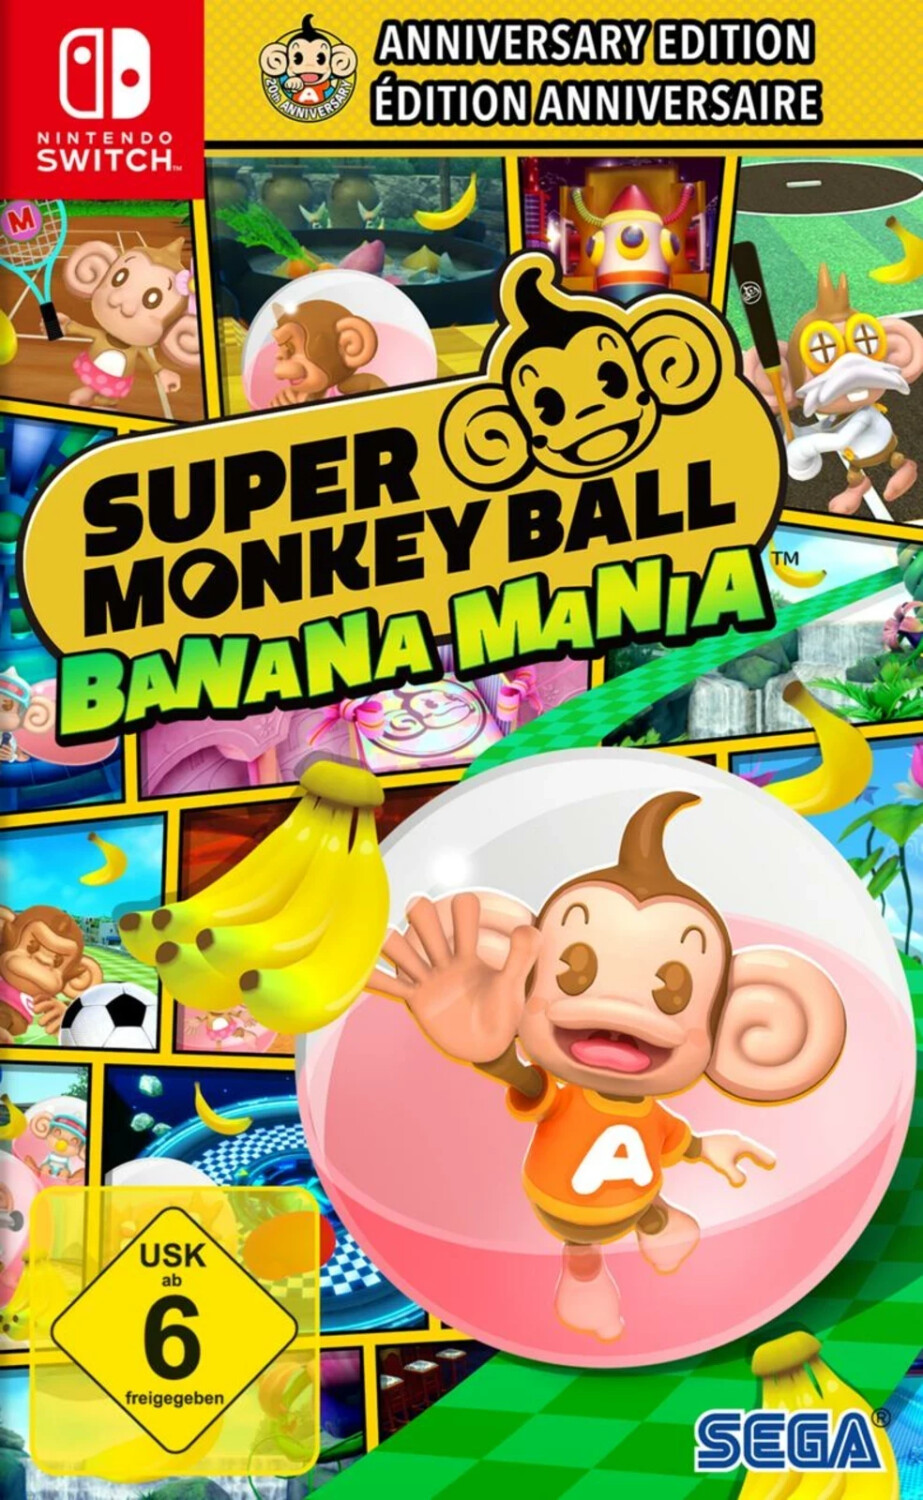 super monkey ball banana mania pc